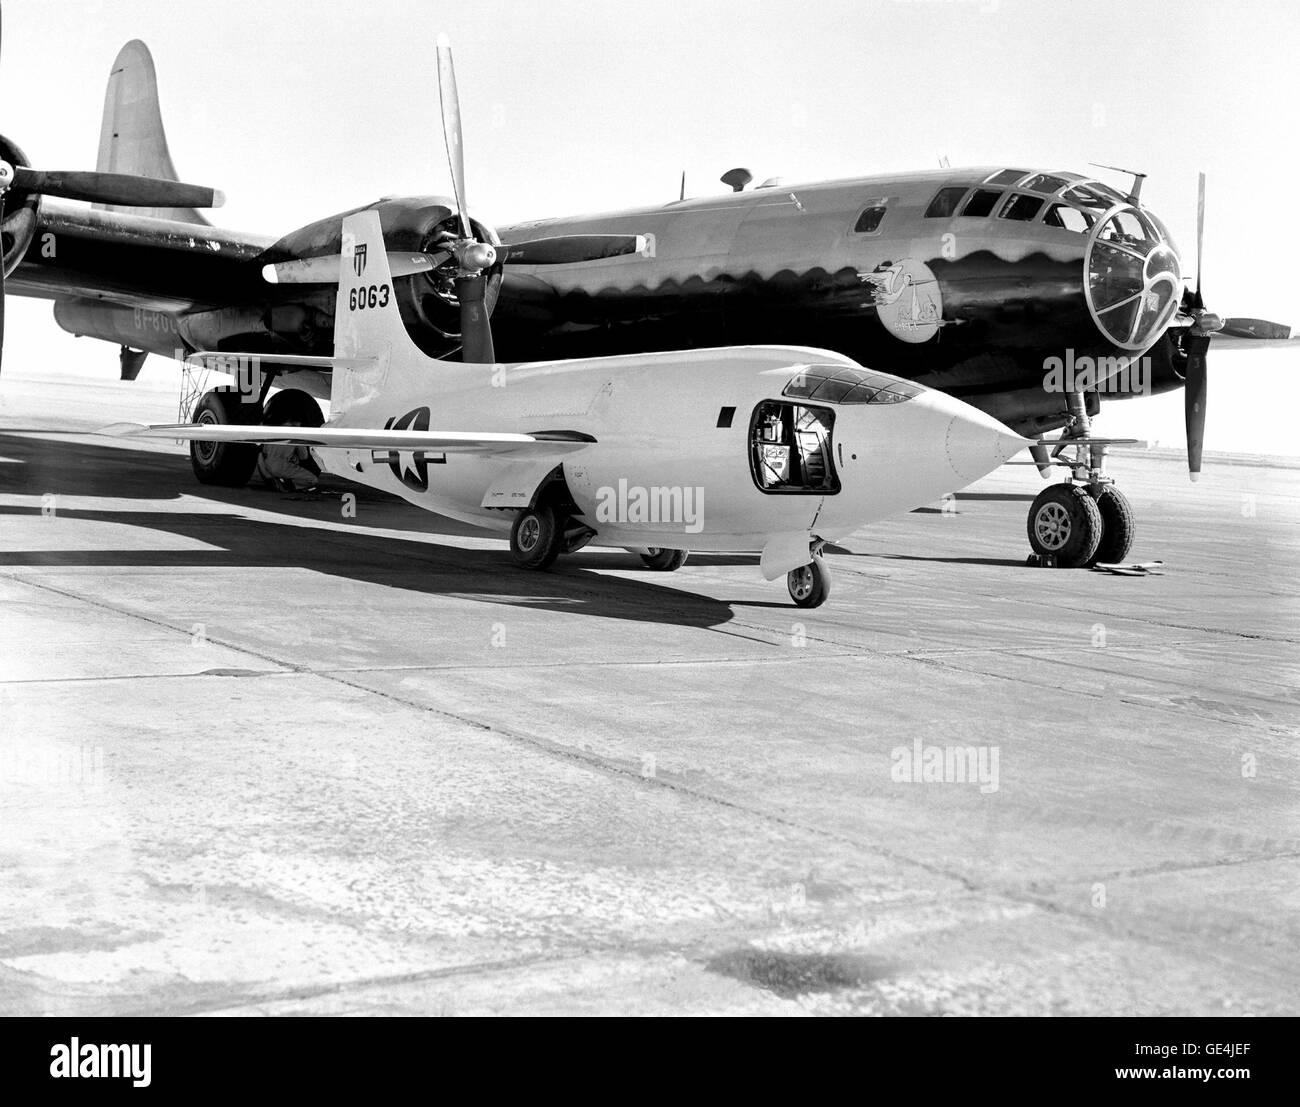 (1949) La Bell Aircraft Corporation X-1-2 seduti sulla rampa a NACA Alta velocità di volo Stazione di ricerca con la Boeing B-29 nave lancio dietro. Il B-29 era affettuosamente denominato "Fertile Myrtle." Il dipinto vicino al naso raffigura una cicogna che porta un pacchetto che è simbolico della Mothership lanciando il suo bambino (X-1-2). Il pilota della porta di accesso è aperto per il cockpit del X-1-2 aeromobili. Immagine # : E49-009 Foto Stock